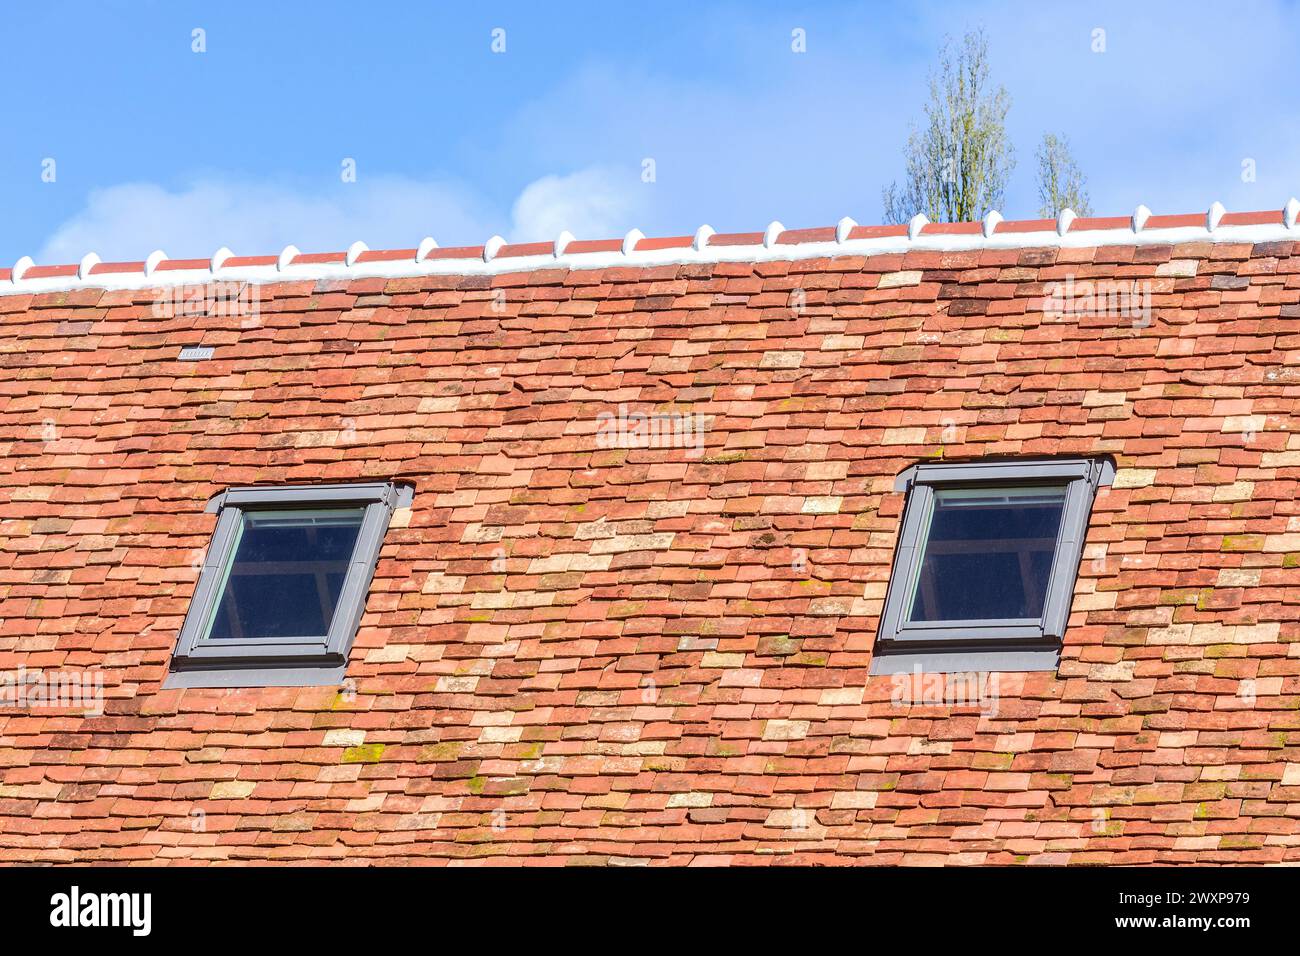 Nouvelle construction de toiture avec tuiles en terre cuite et fenêtres Velux - Preuilly-sur-Claise, Indre-et-Loire (37), France. Banque D'Images